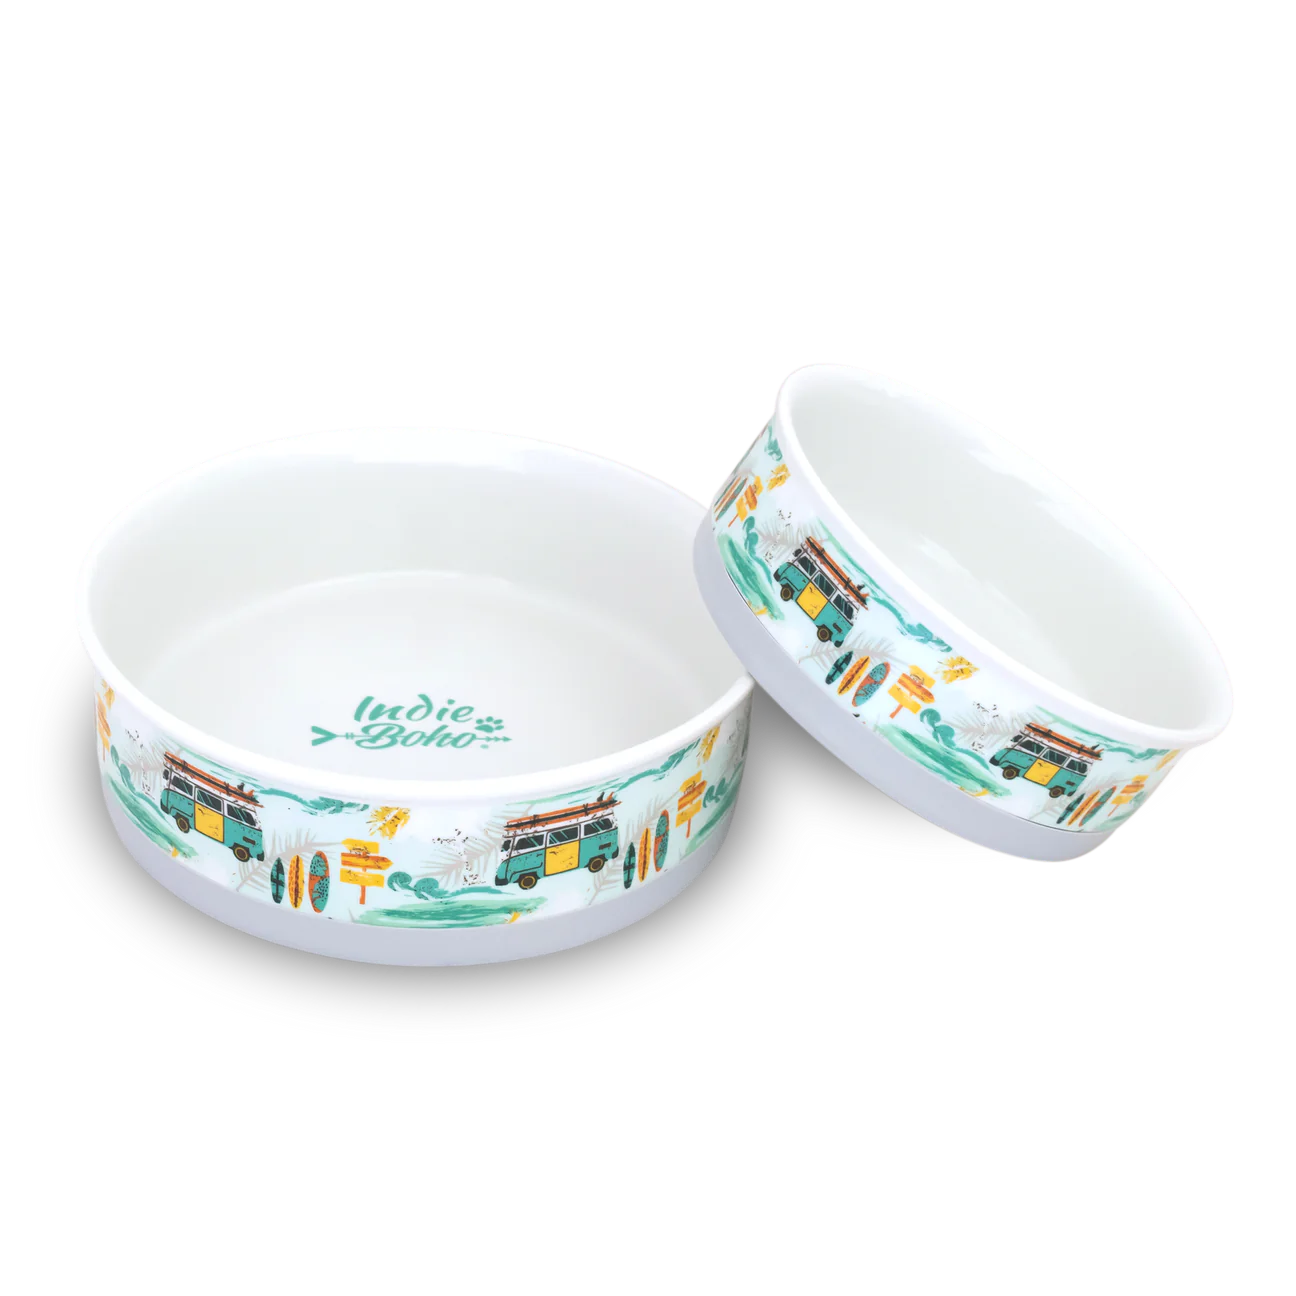 INDIEBOHO Ceramic Bowl Medium 15cm